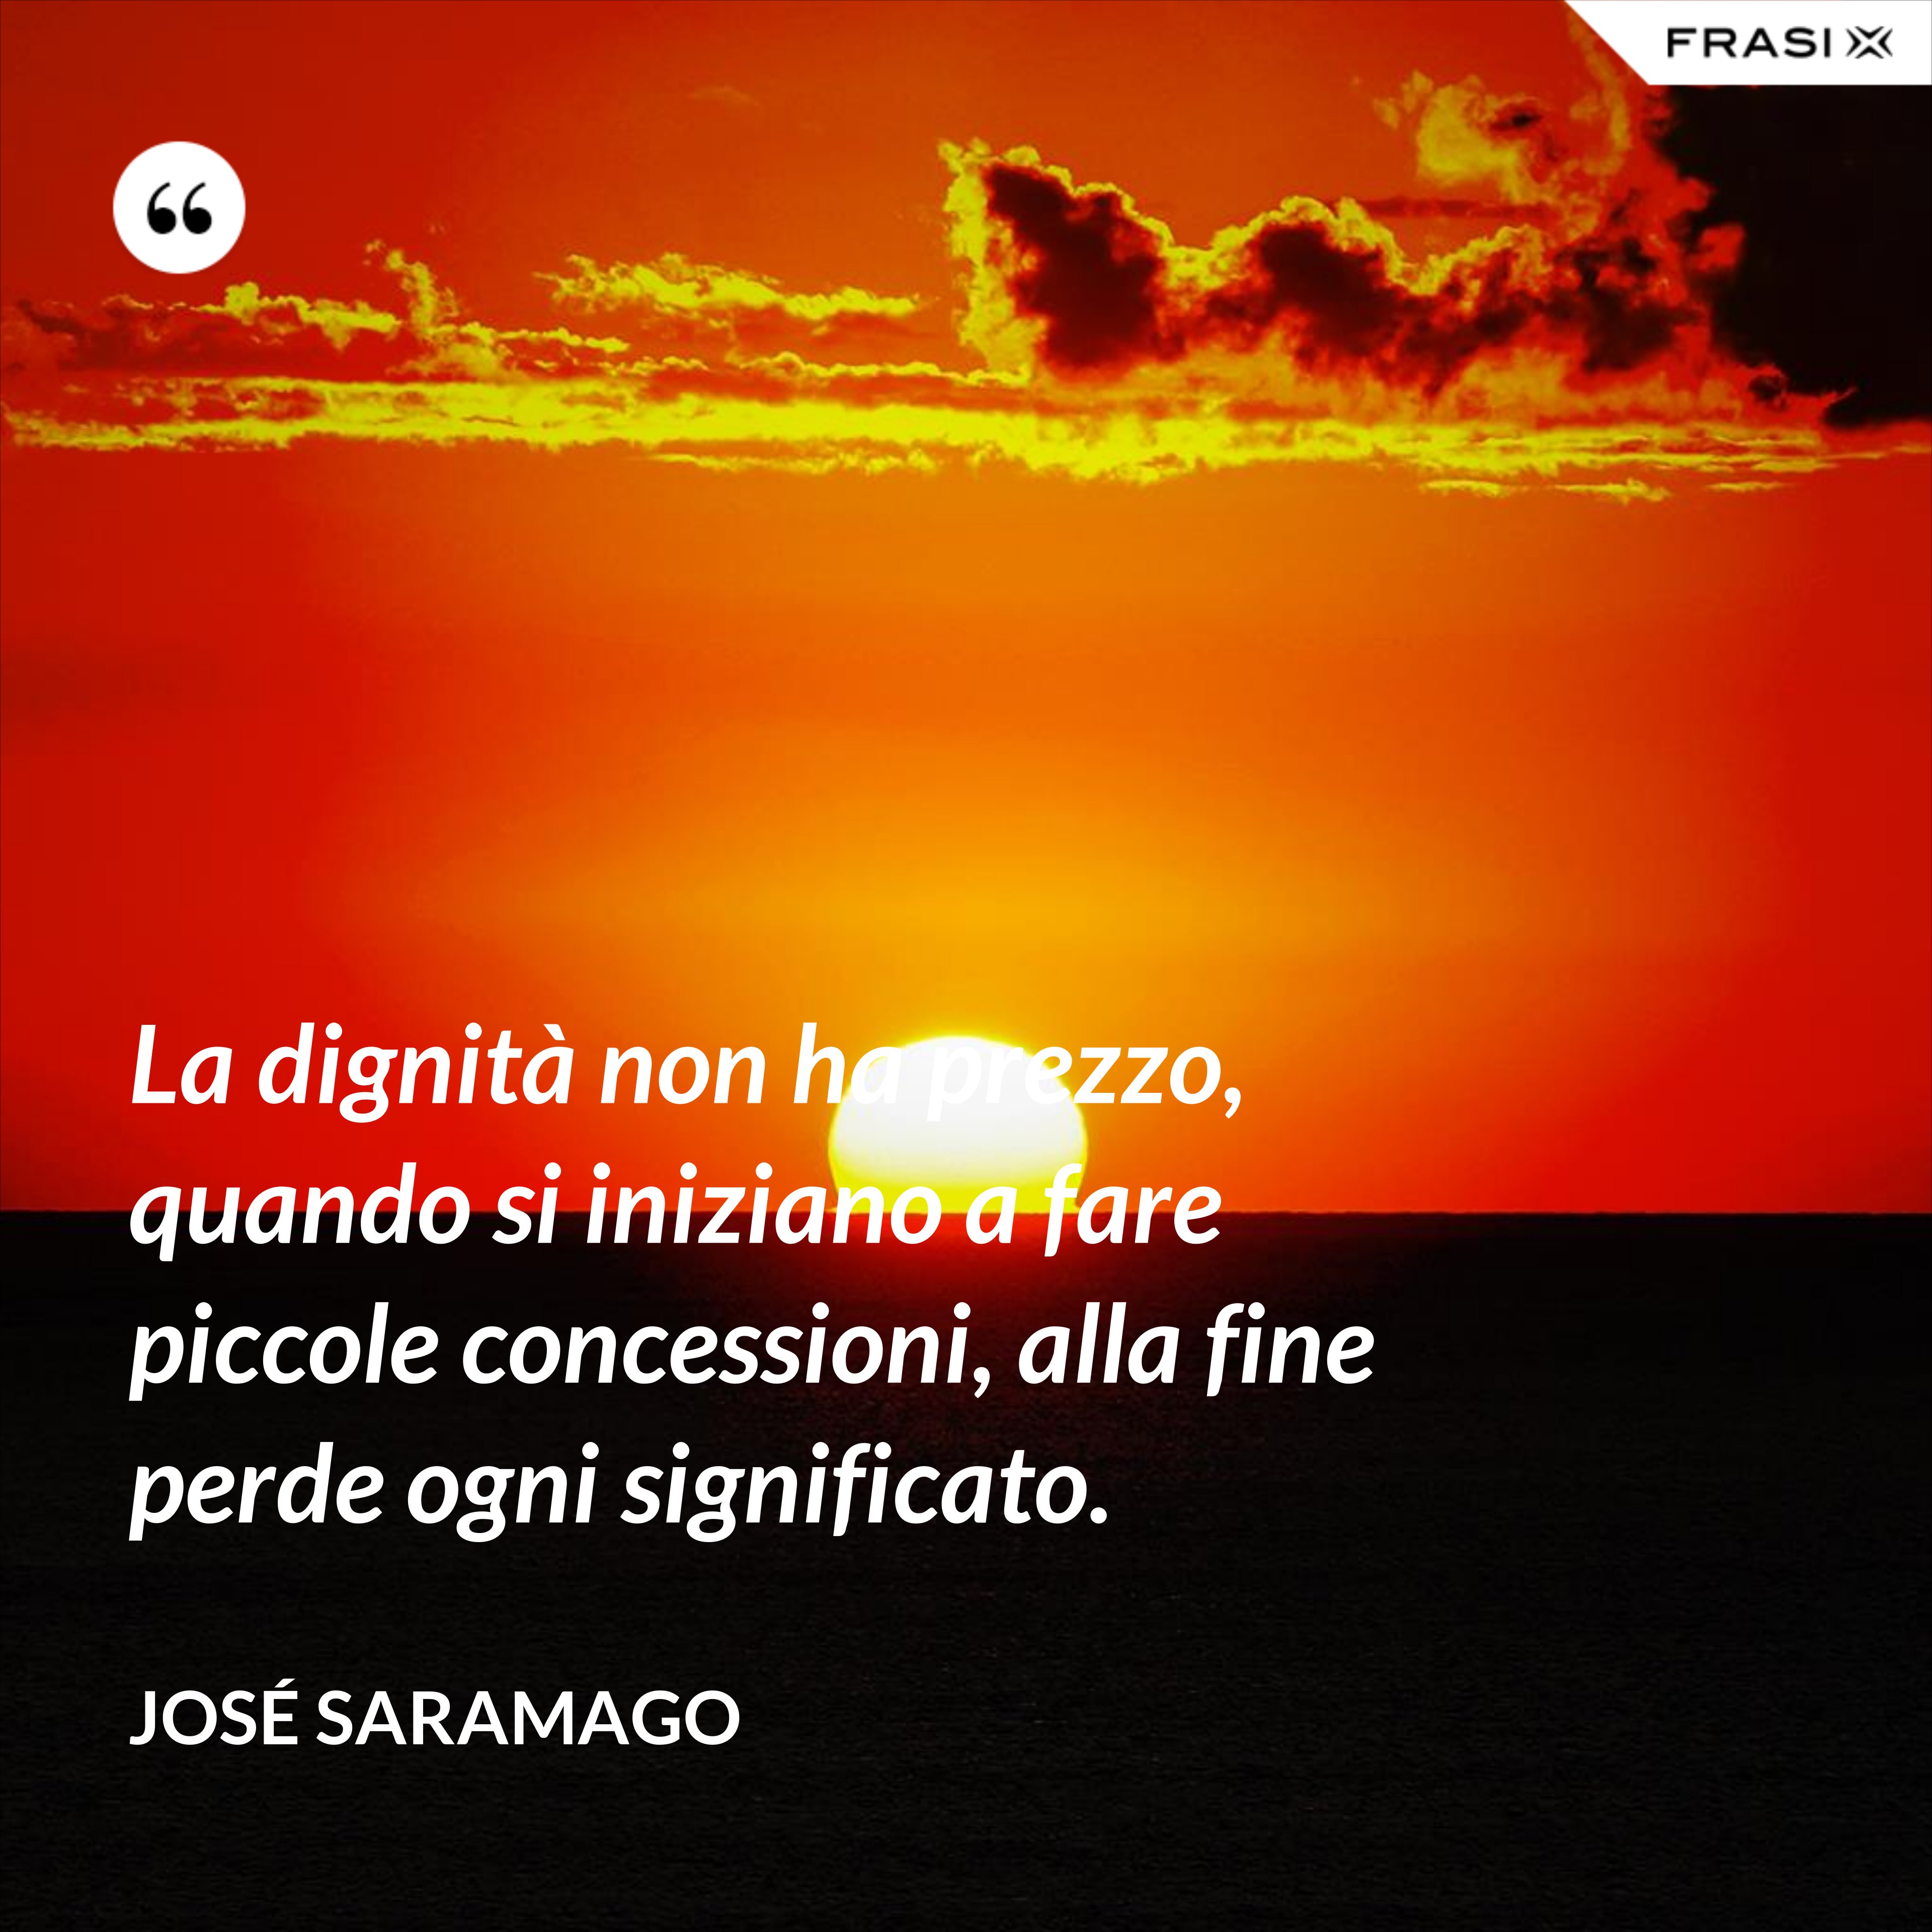 La dignità non ha prezzo, quando si iniziano a fare piccole concessioni, alla fine perde ogni significato. - José Saramago